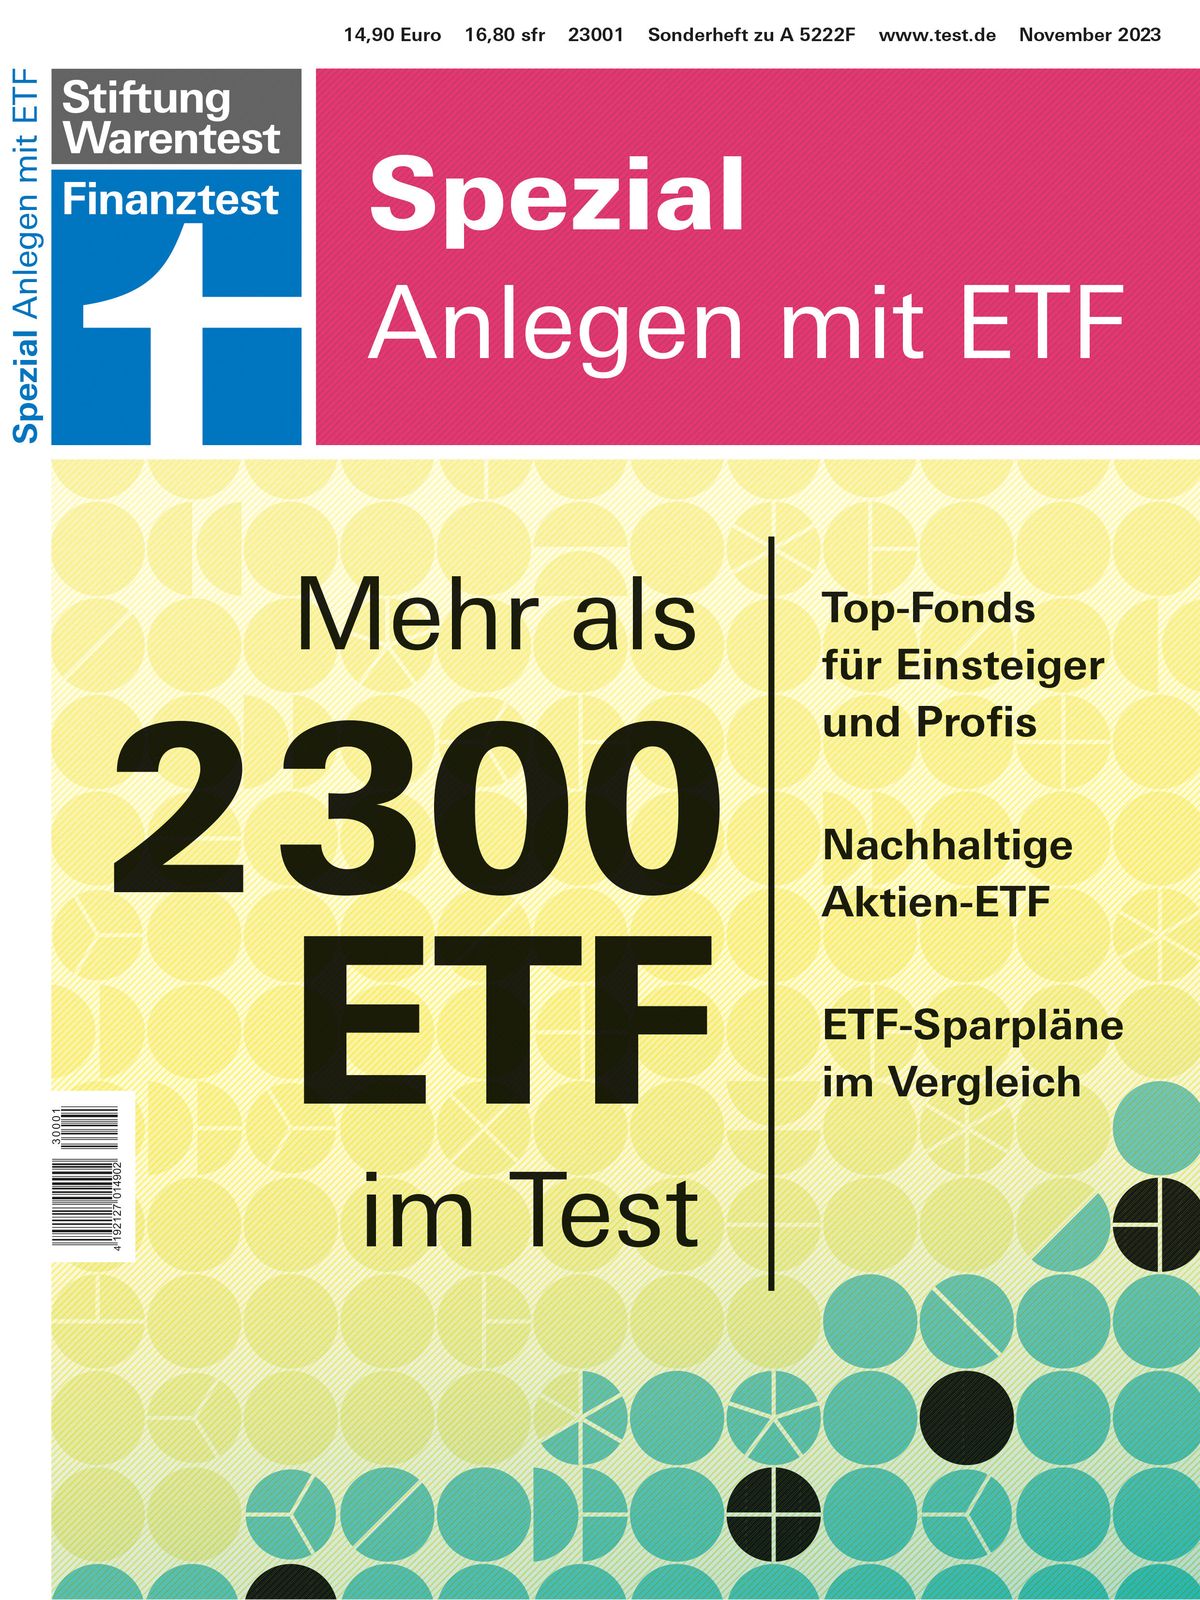 Foto: Finanztest Spezial Anlegen mit ETF.